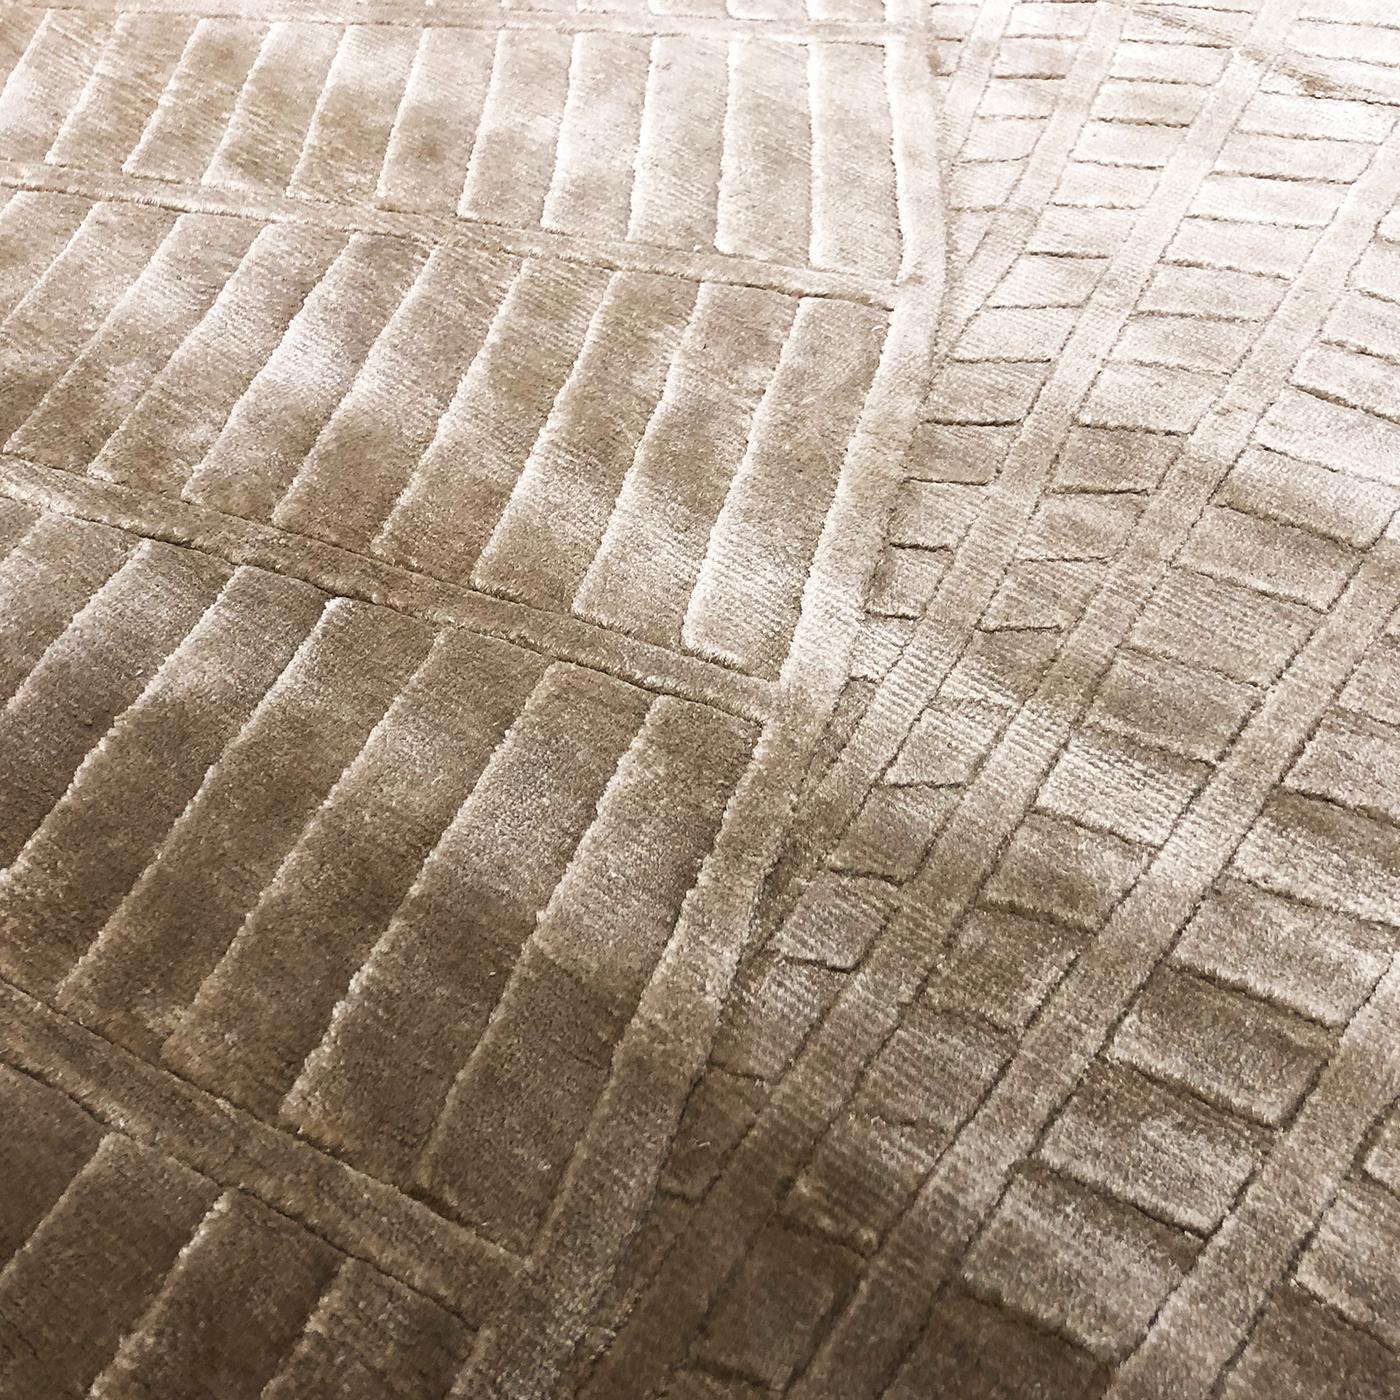 Als beiges Gegenstück zum Endless Rug in seiner blauen Variante bietet dieser raffinierte Teppich eine sanftere Perspektive der optischen Kunst, die sich auf seinen strukturellen Reiz stützt. Nepalesische Handwerksmeister schießen dieses Bodendekor